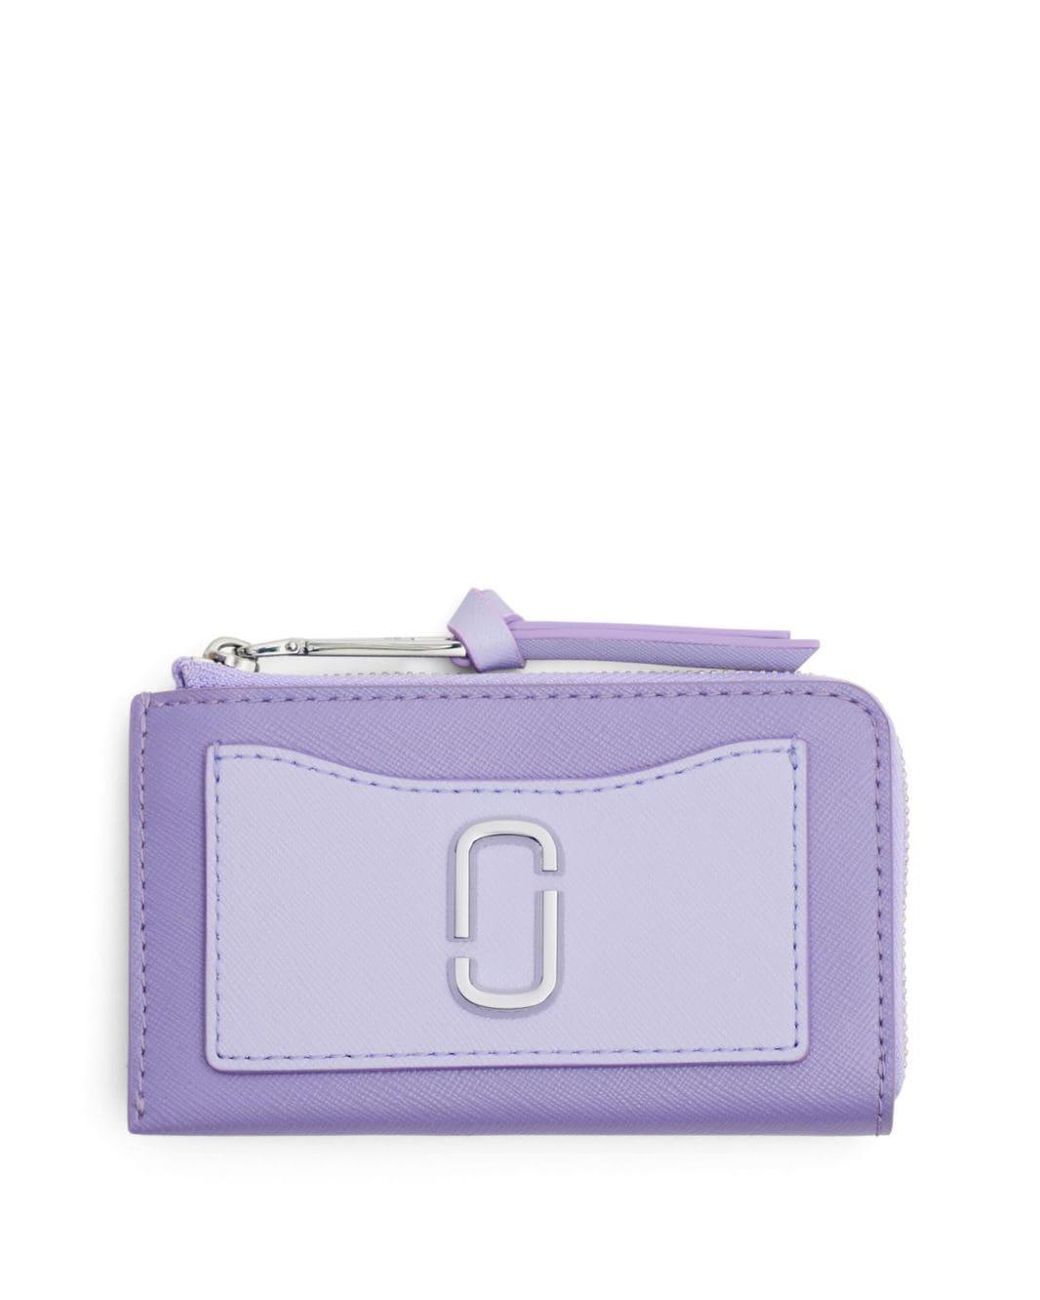 Marc Jacobs Snapshot Top Zip Multi Wallet in Pink